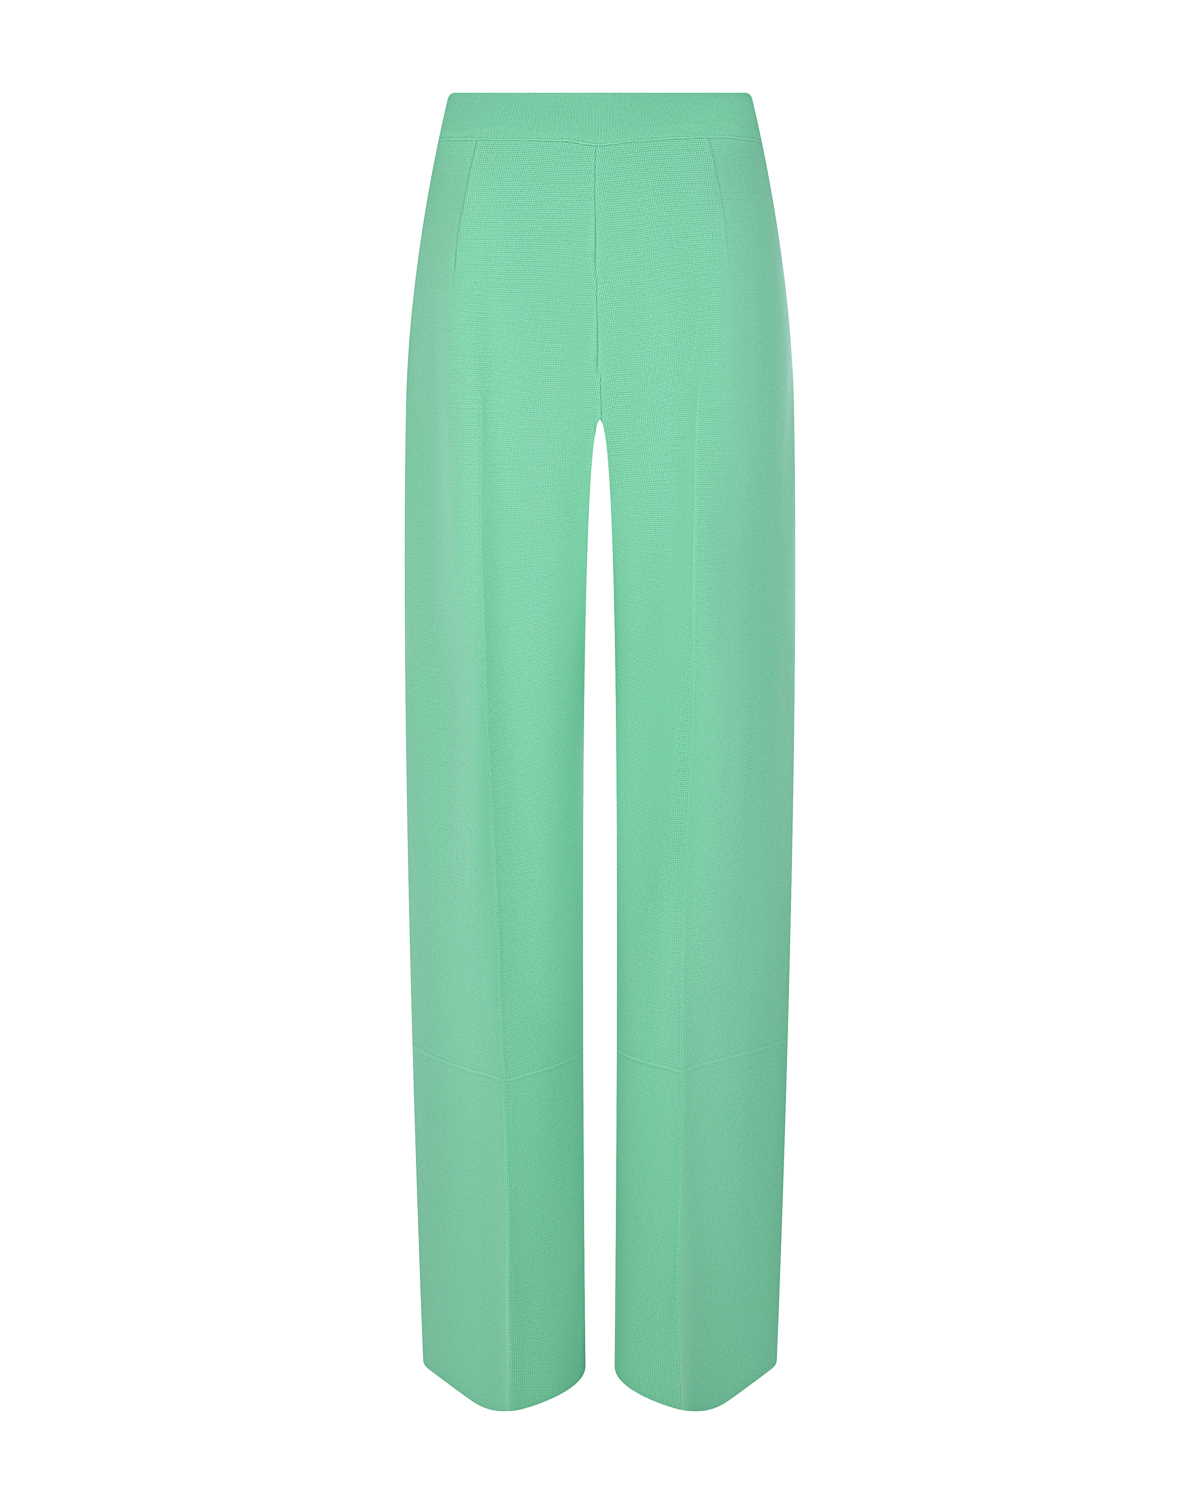 Зеленые брюки со стрелками MRZ, размер 44, цвет зеленый - фото 5